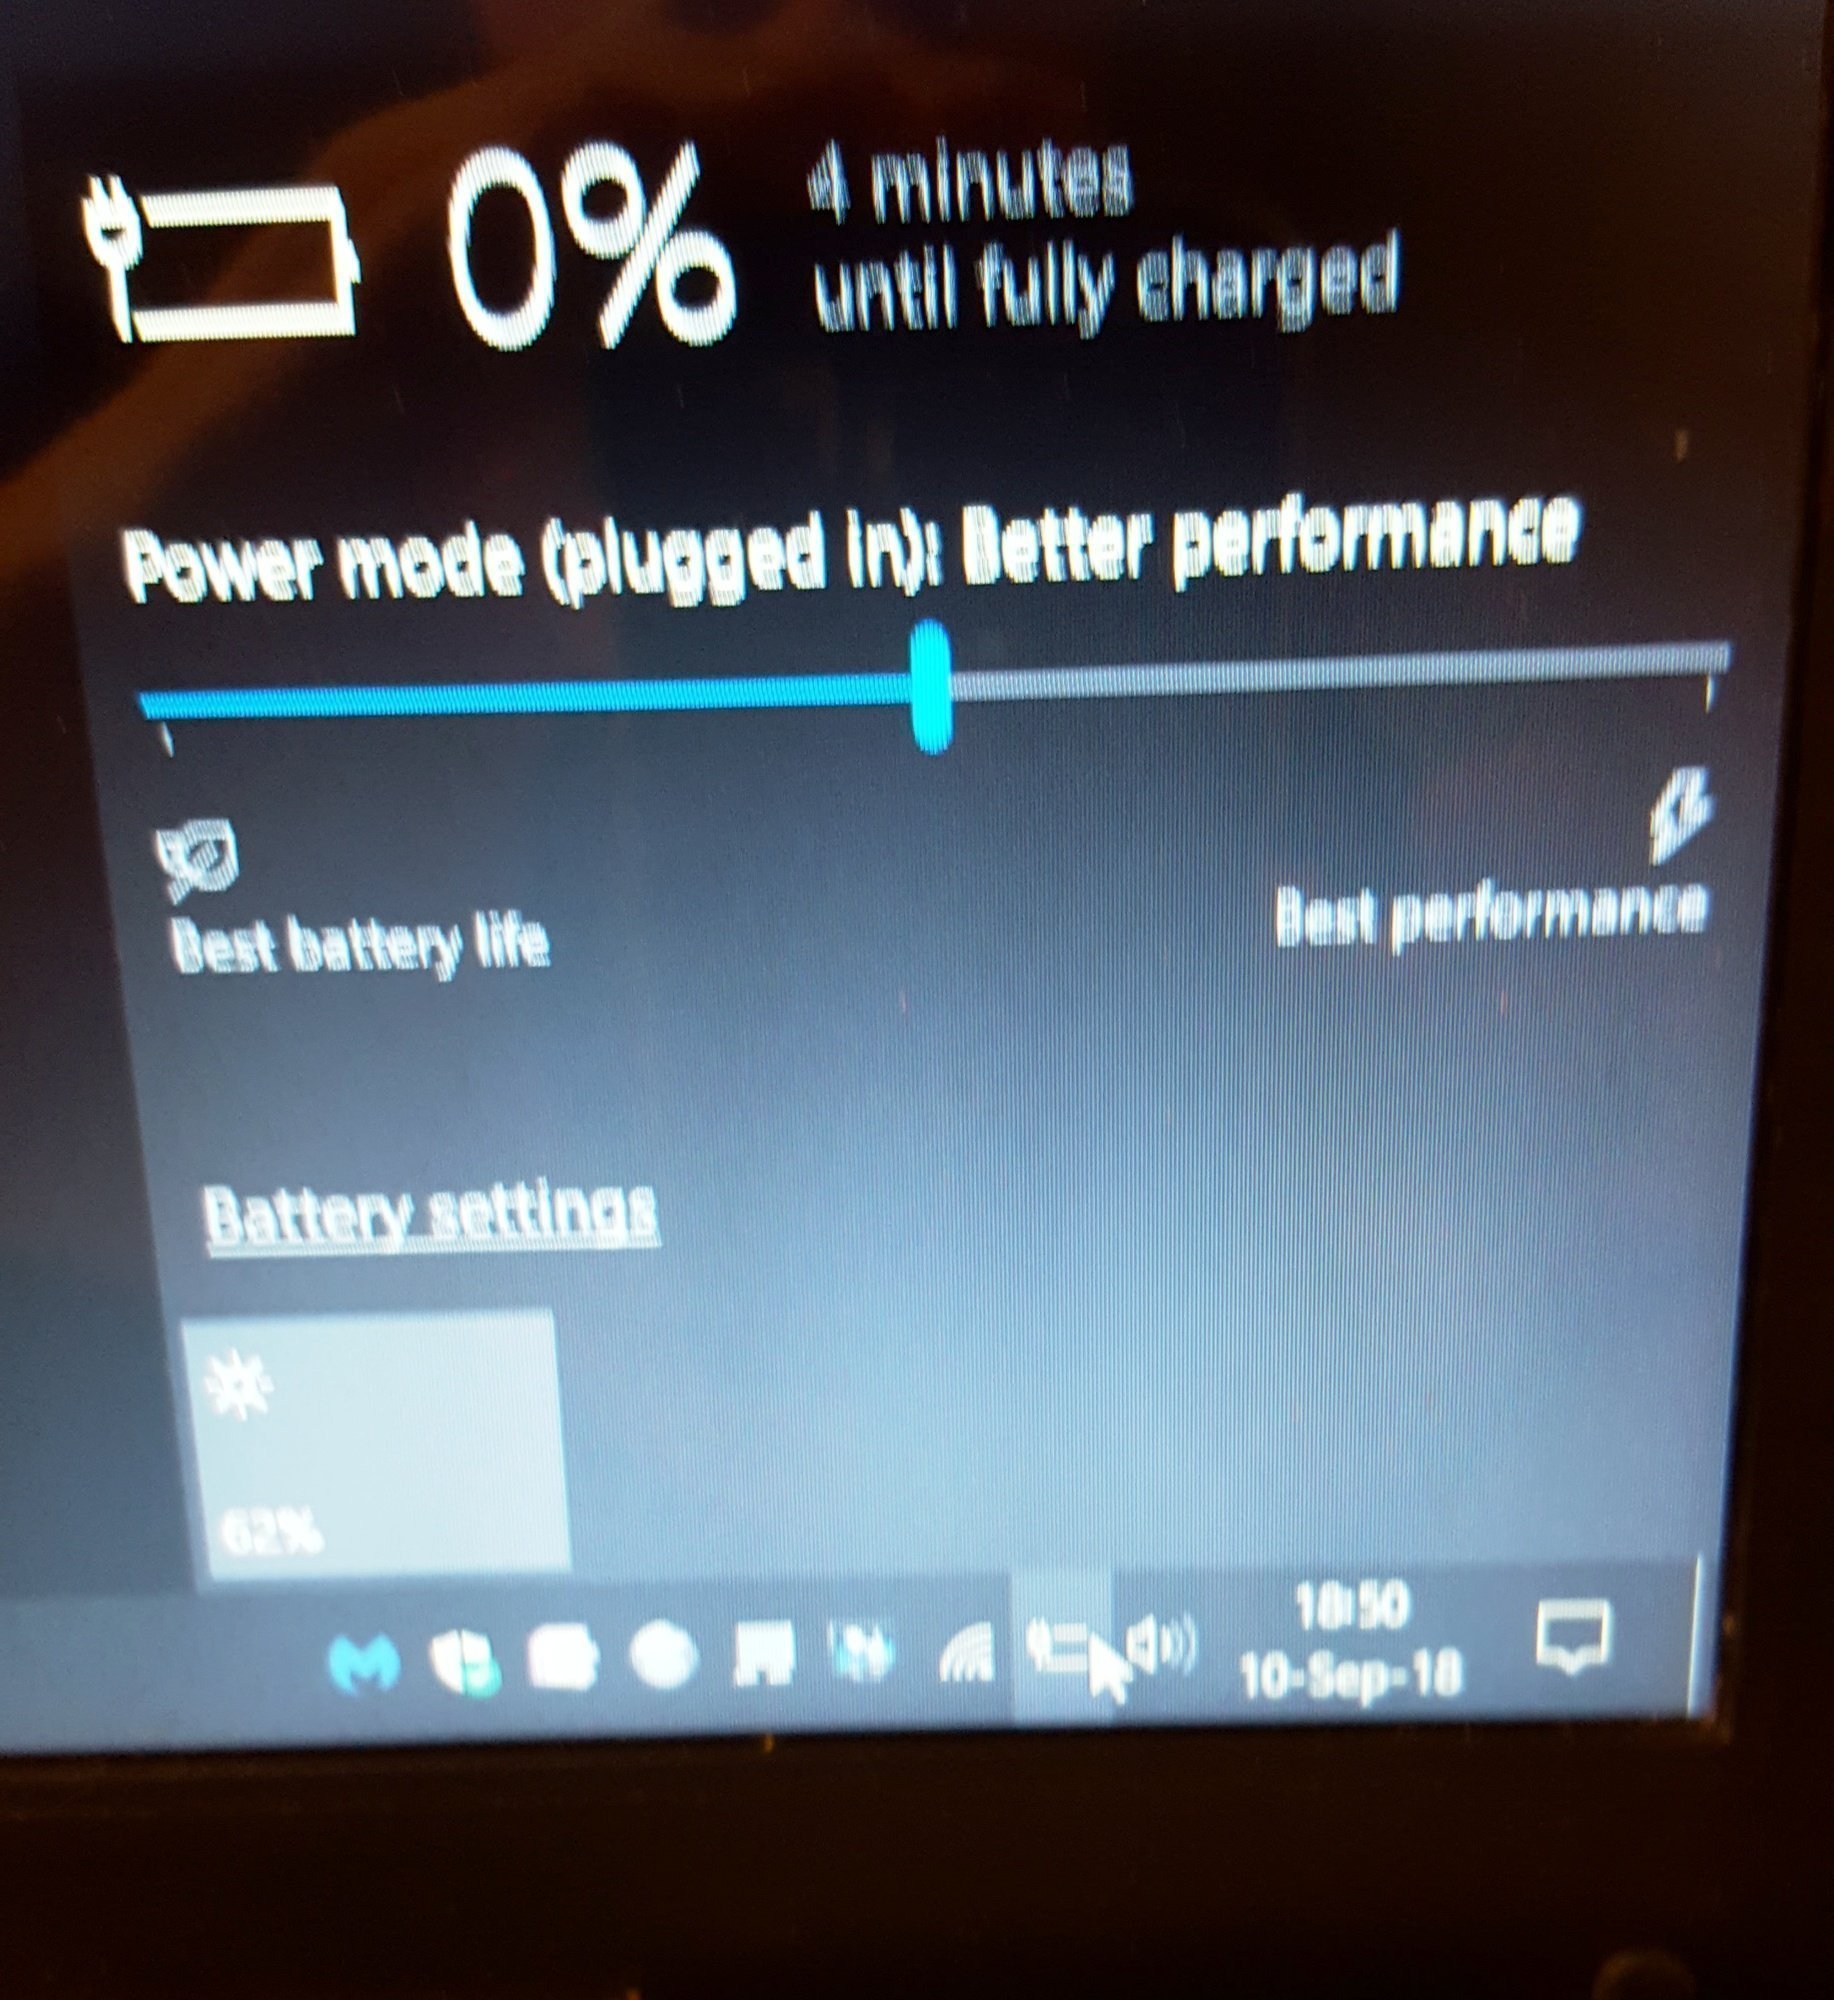 New Laptop Battery Not Charging d833197b-6b2f-4113-a08b-db4ed5110471?upload=true.jpg